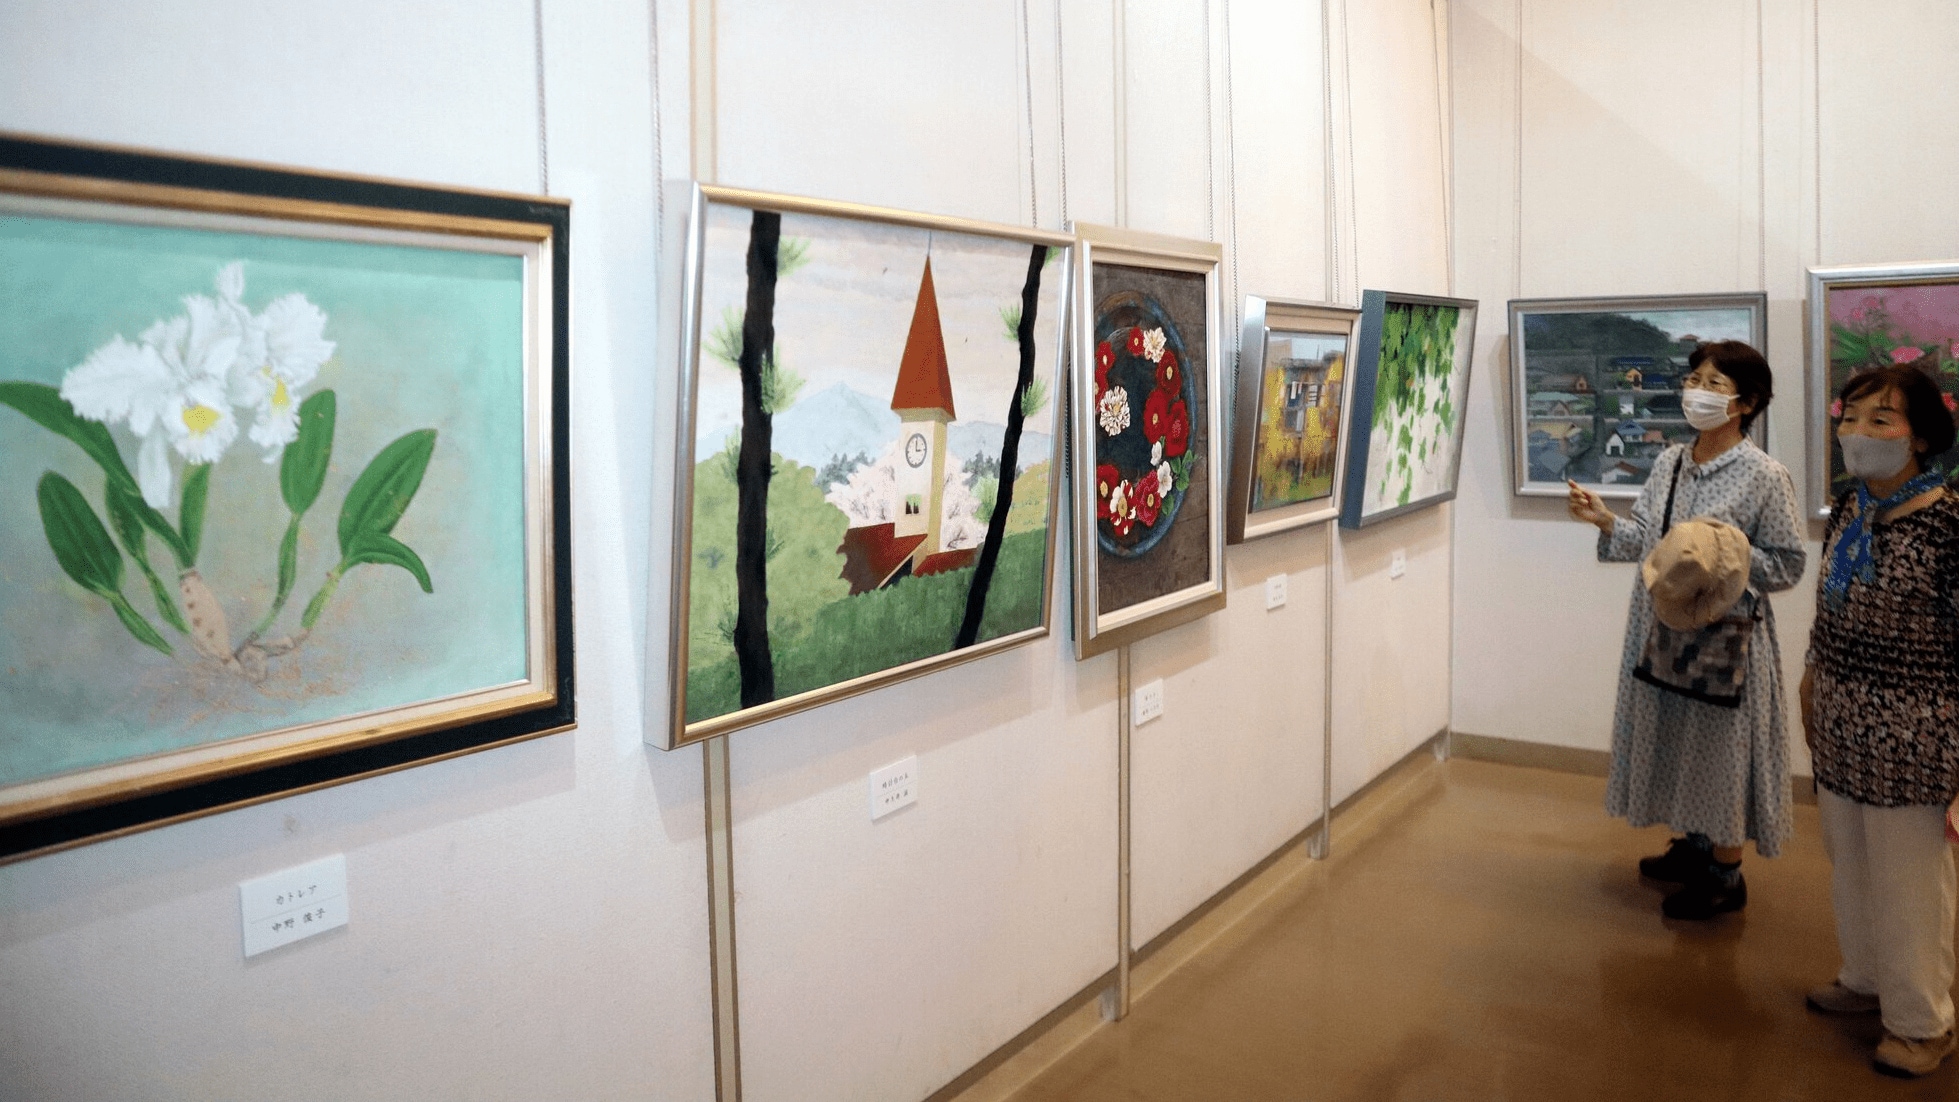 心に残る景色、日本画に 呉市のグループが作品展 | 中国新聞デジタル